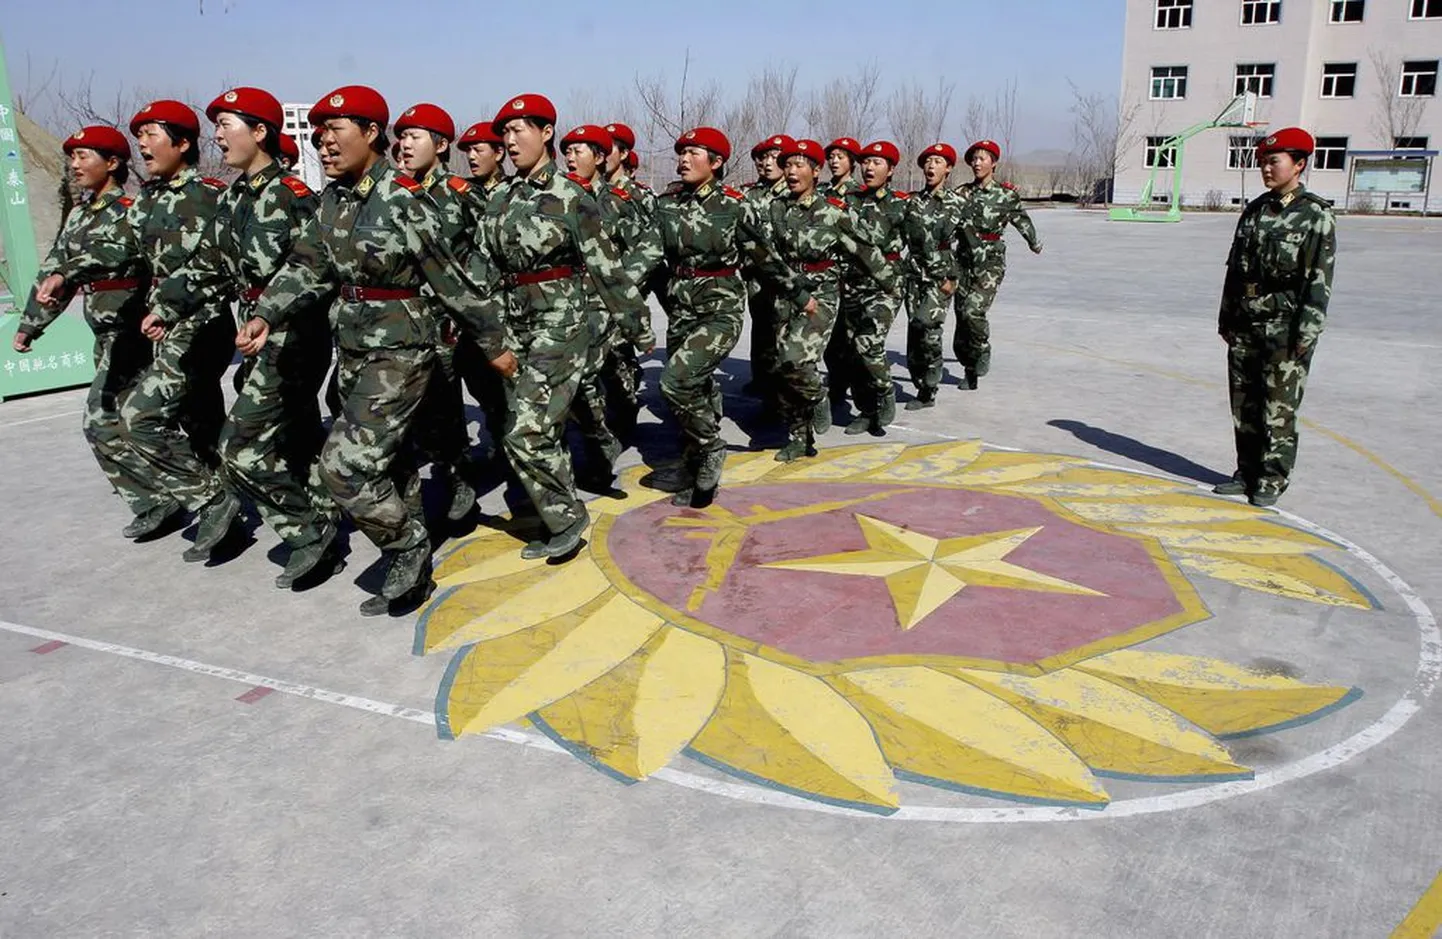 Hiina paramilitaarsed politseinikud uiguuride autonoomses regioonis Xinjiangi provintsis.